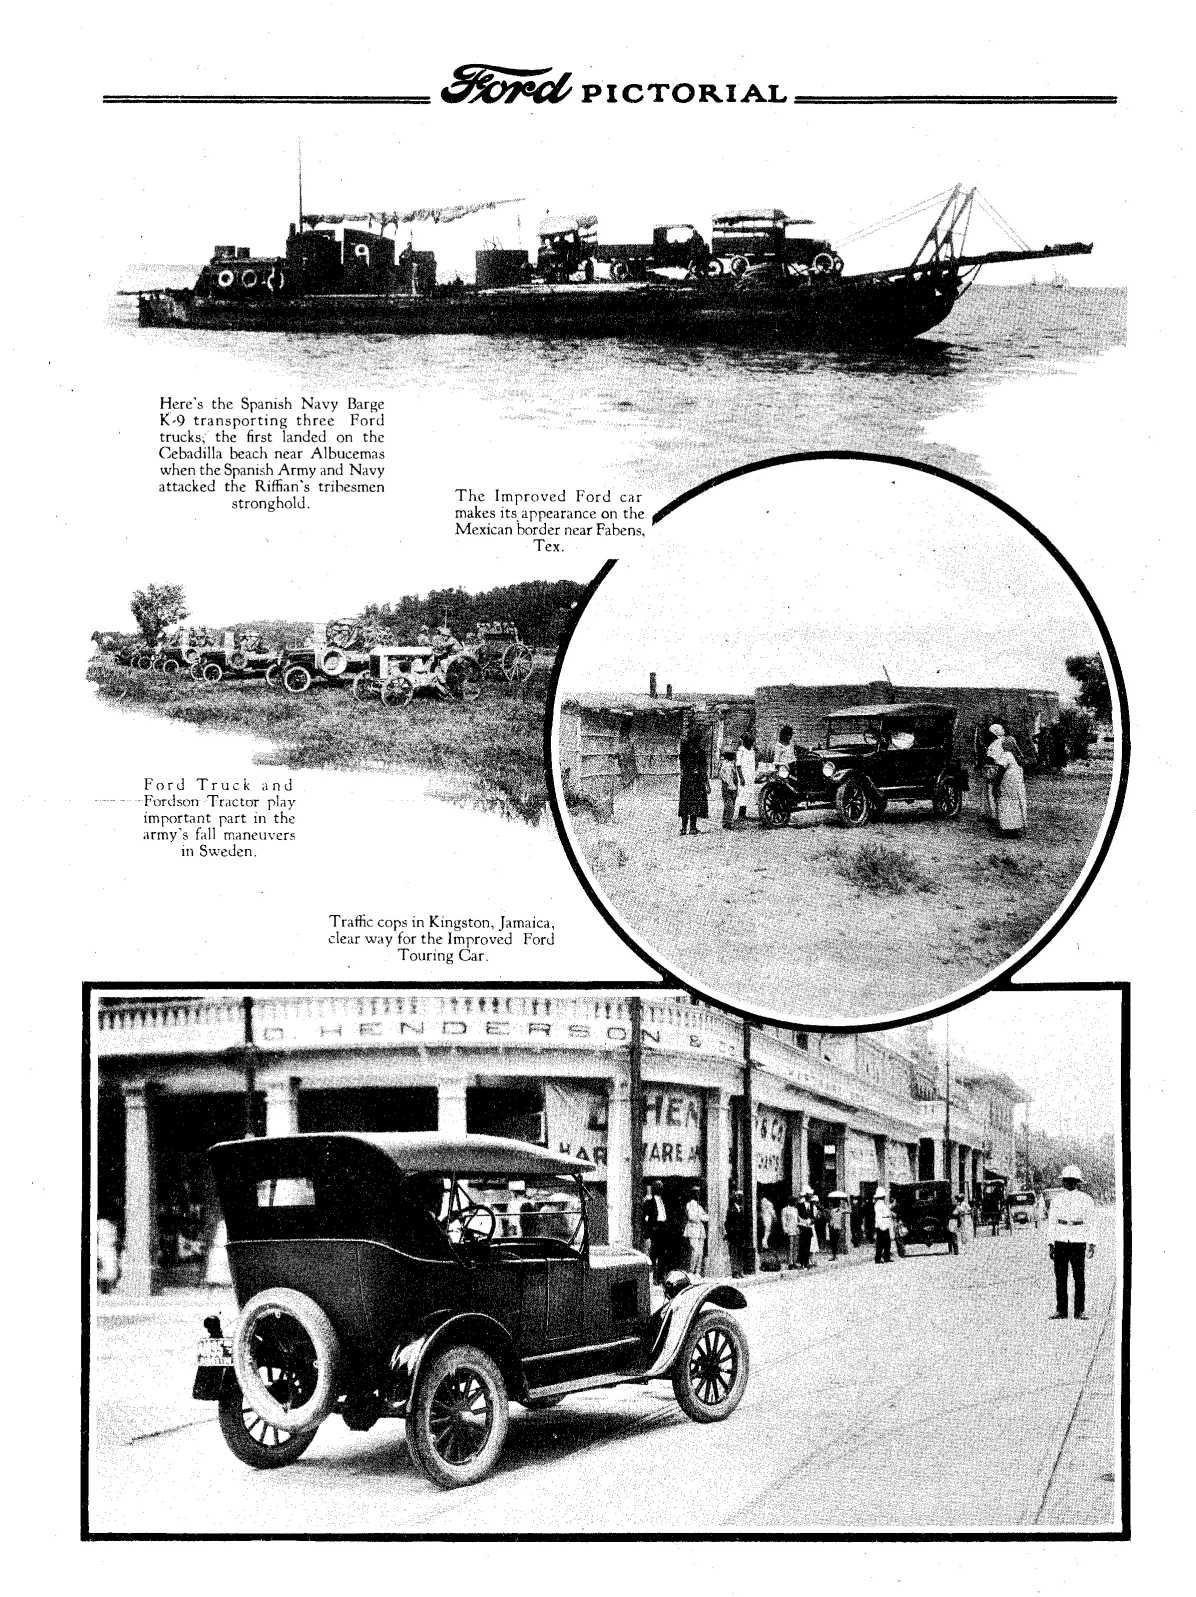 n_1926 Ford Pictorial-01-2.jpg